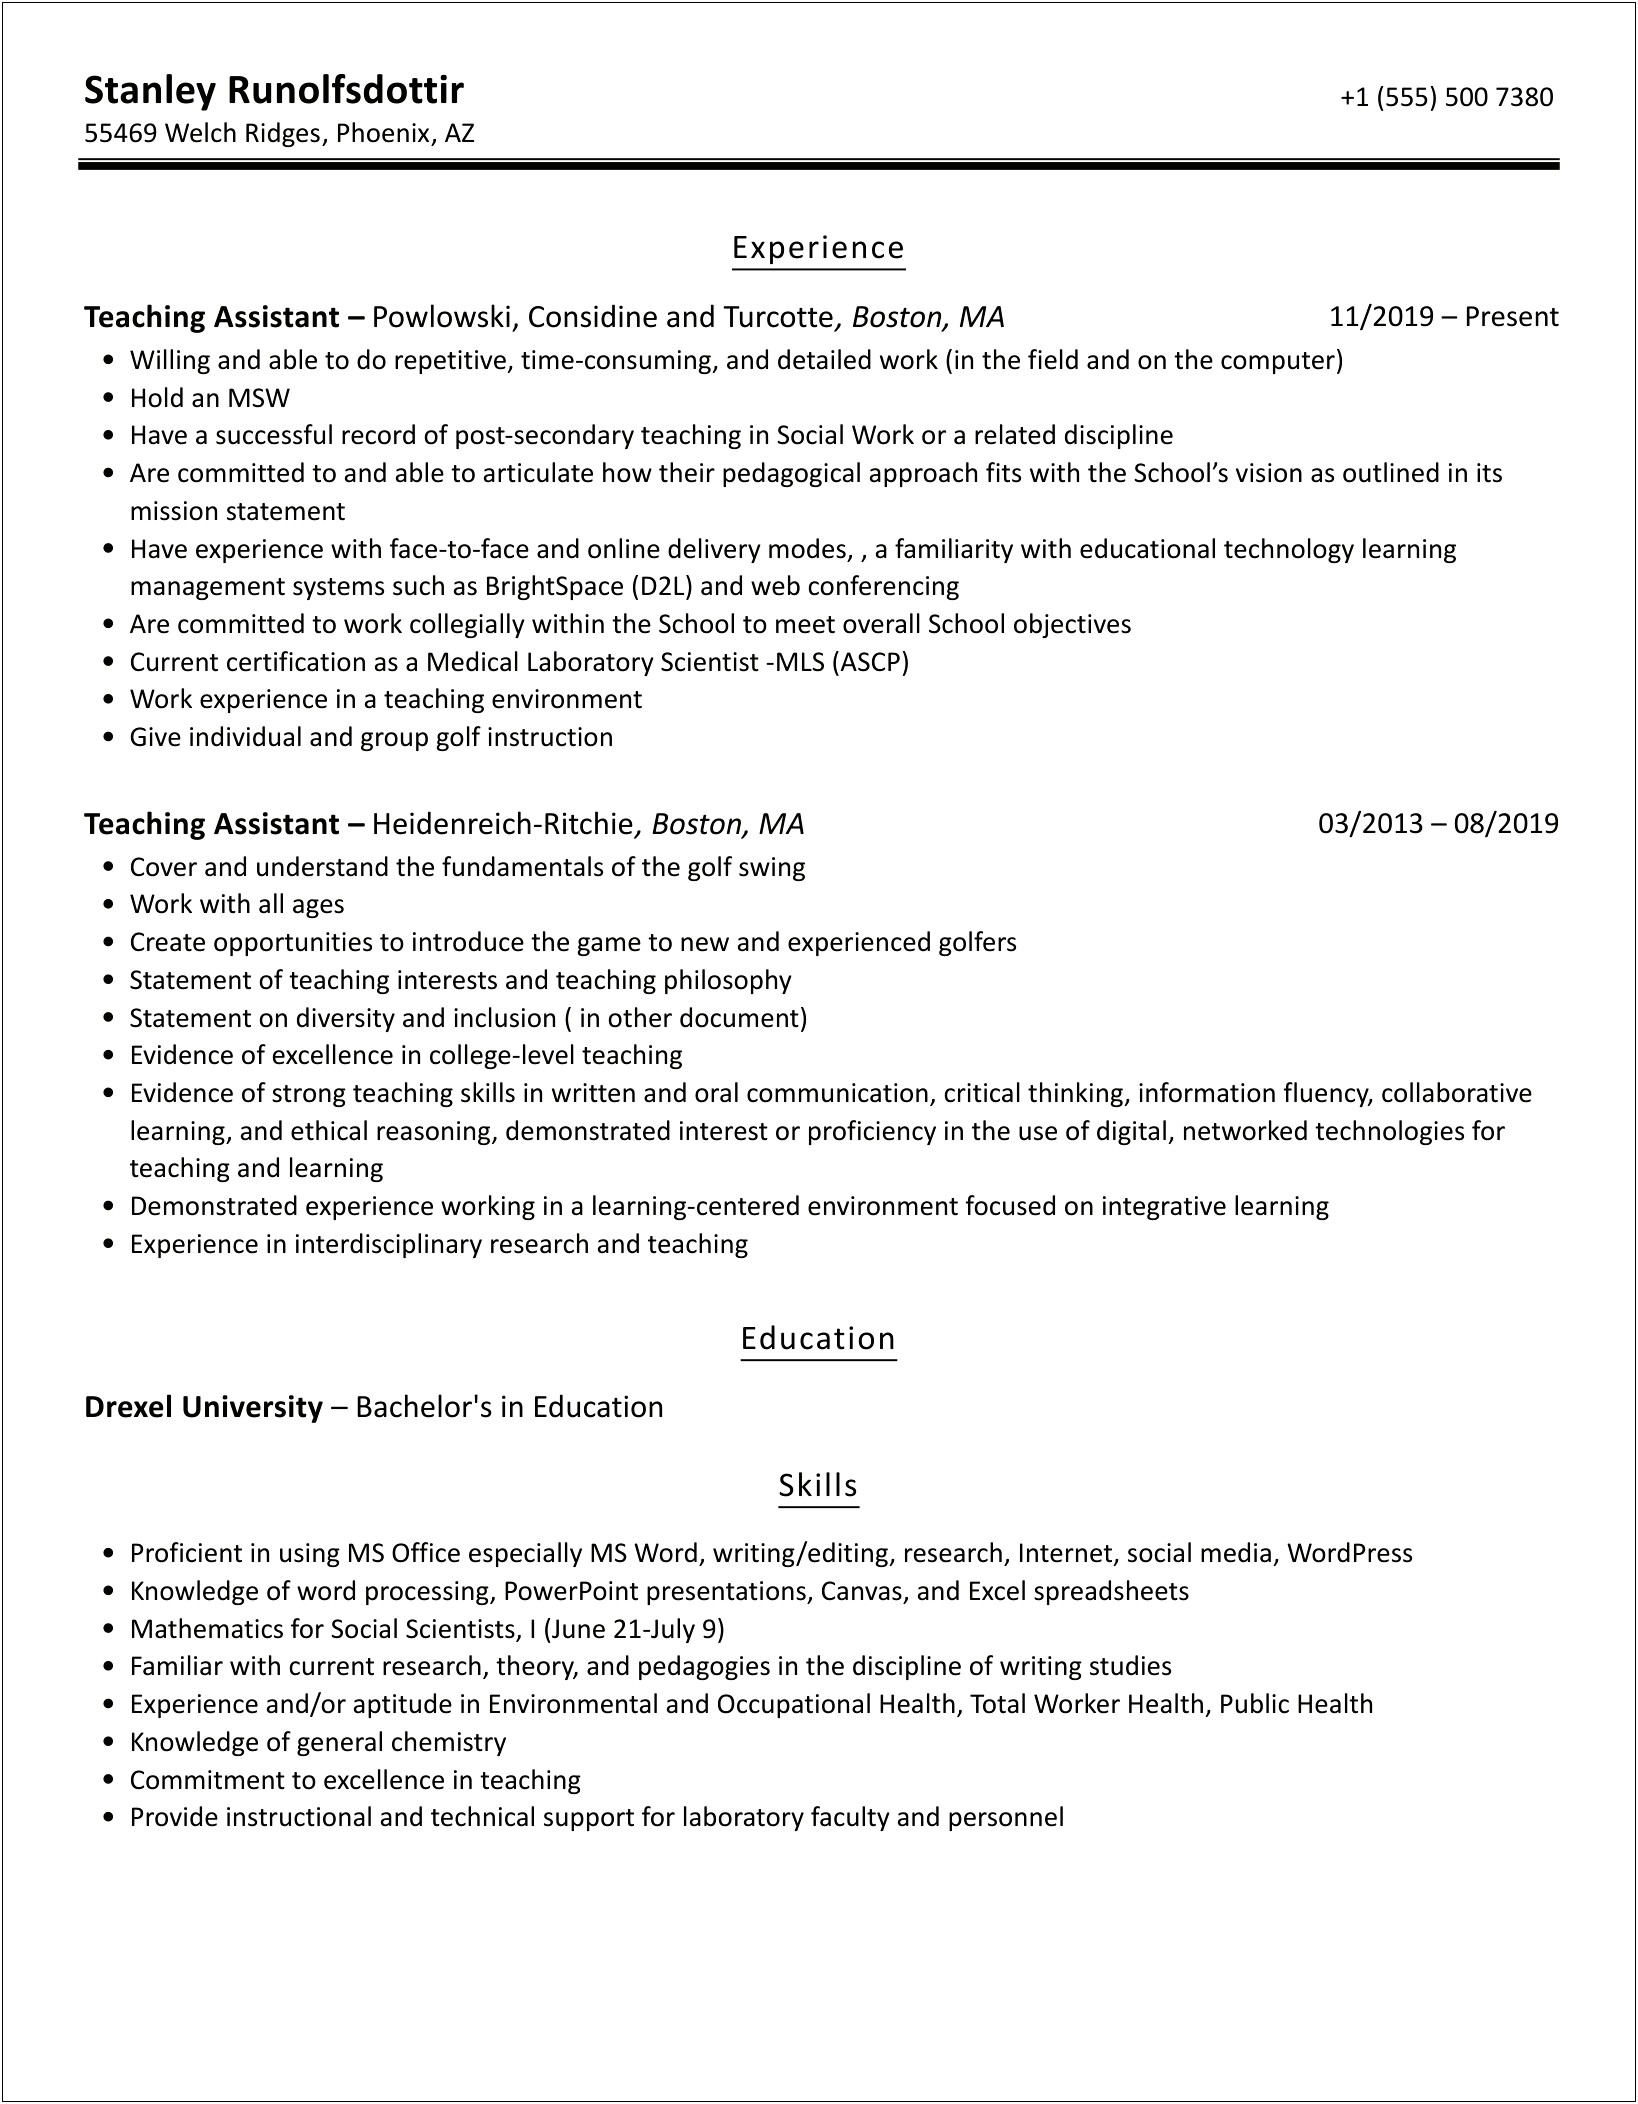 University Teaching Assistant Job Description Resume